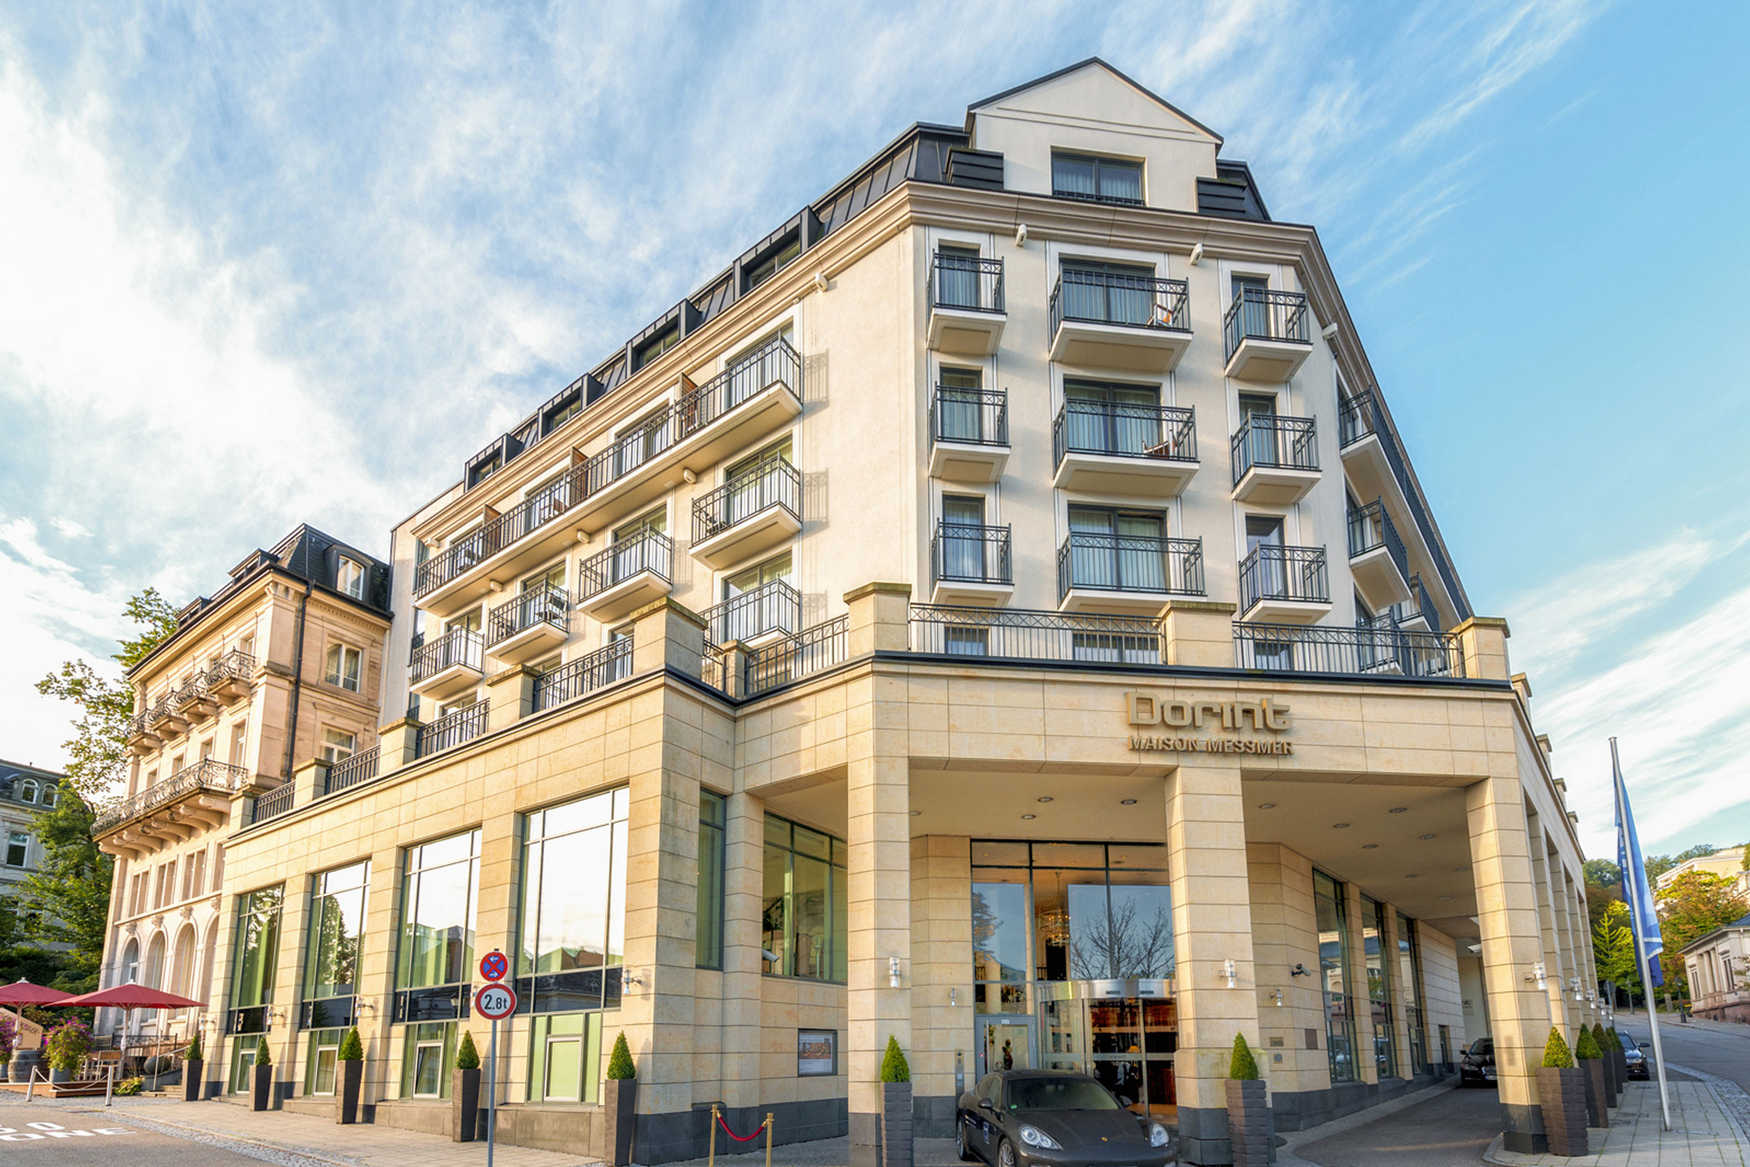 Maison Messmer - ein Mitglied der Hommage Luxury Hotels Collection